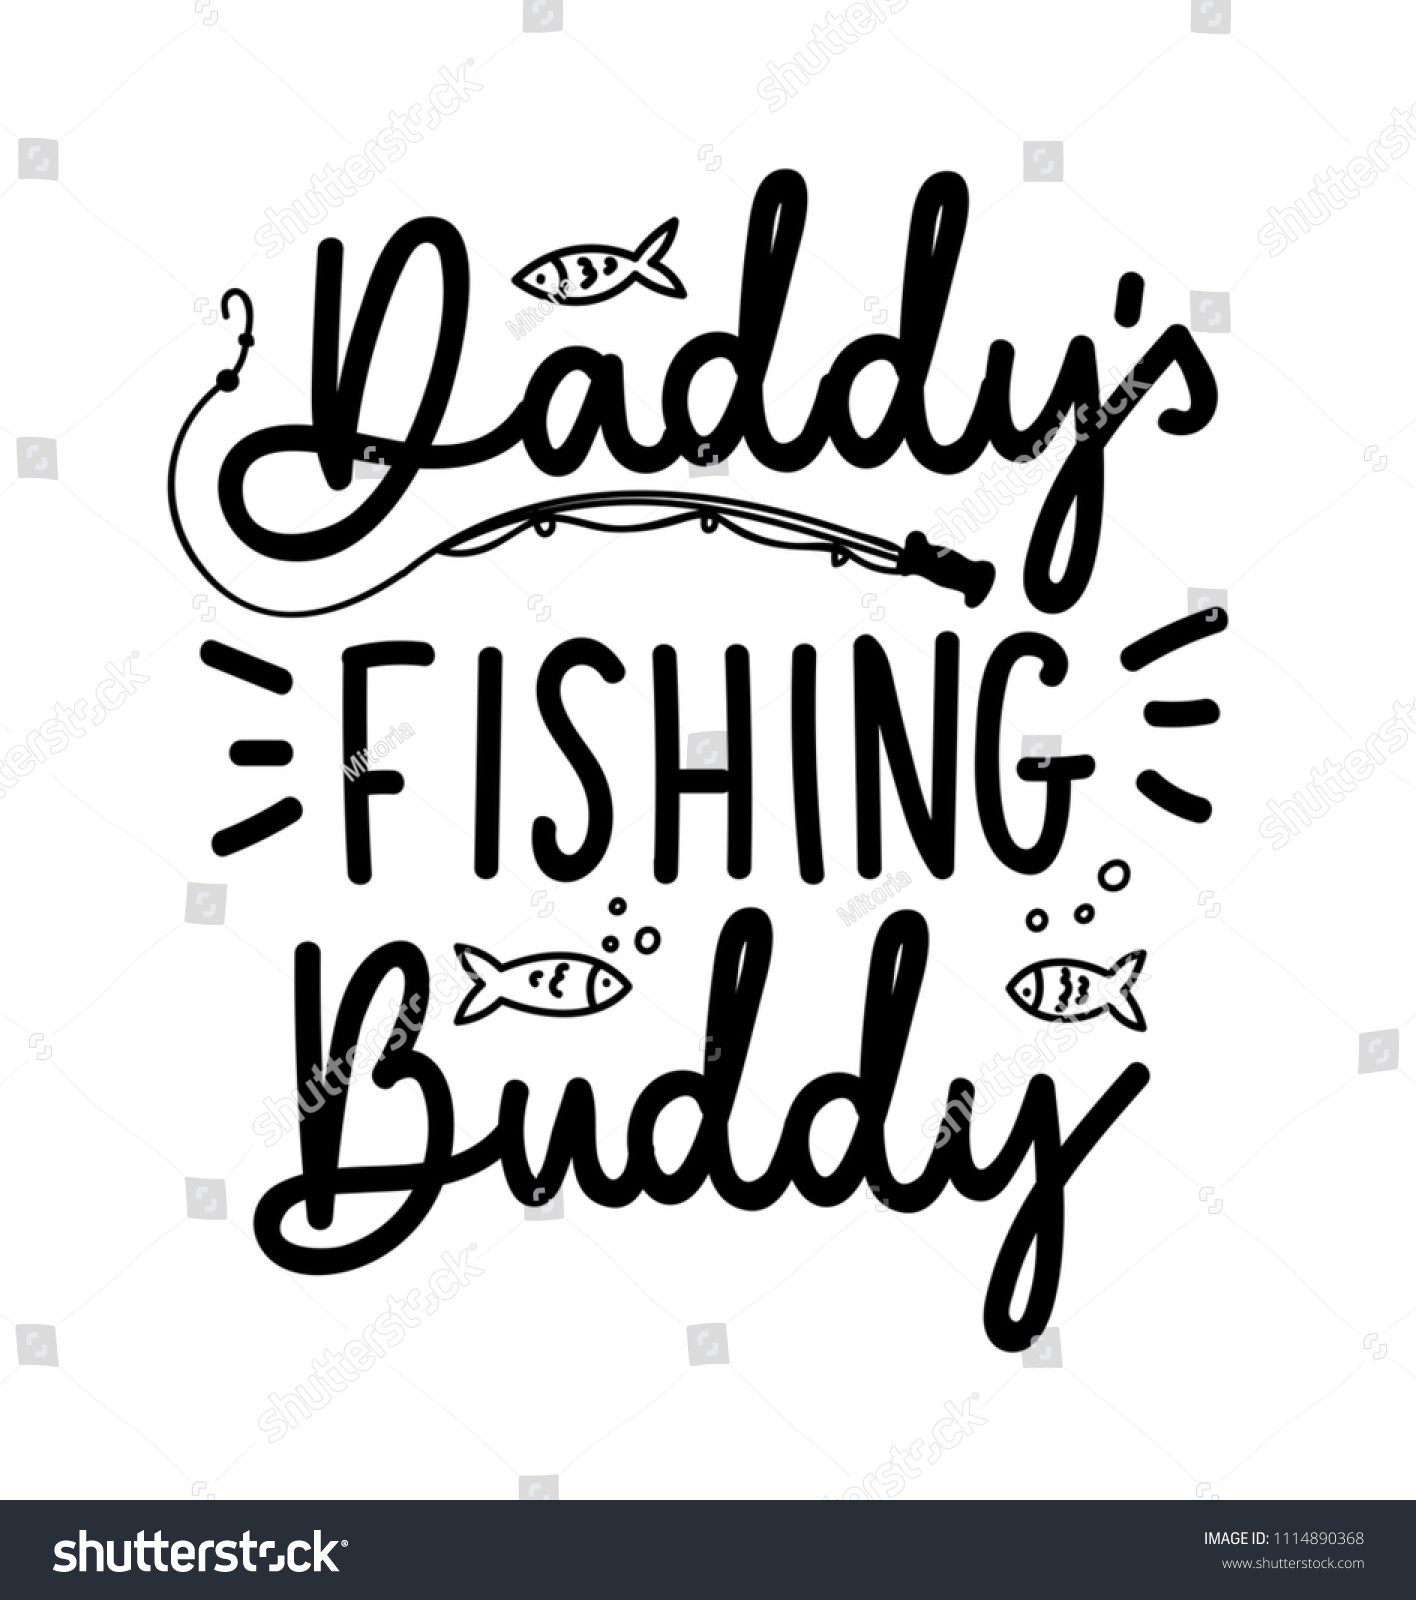 New Fishing Design Daddys Fishing Buddy